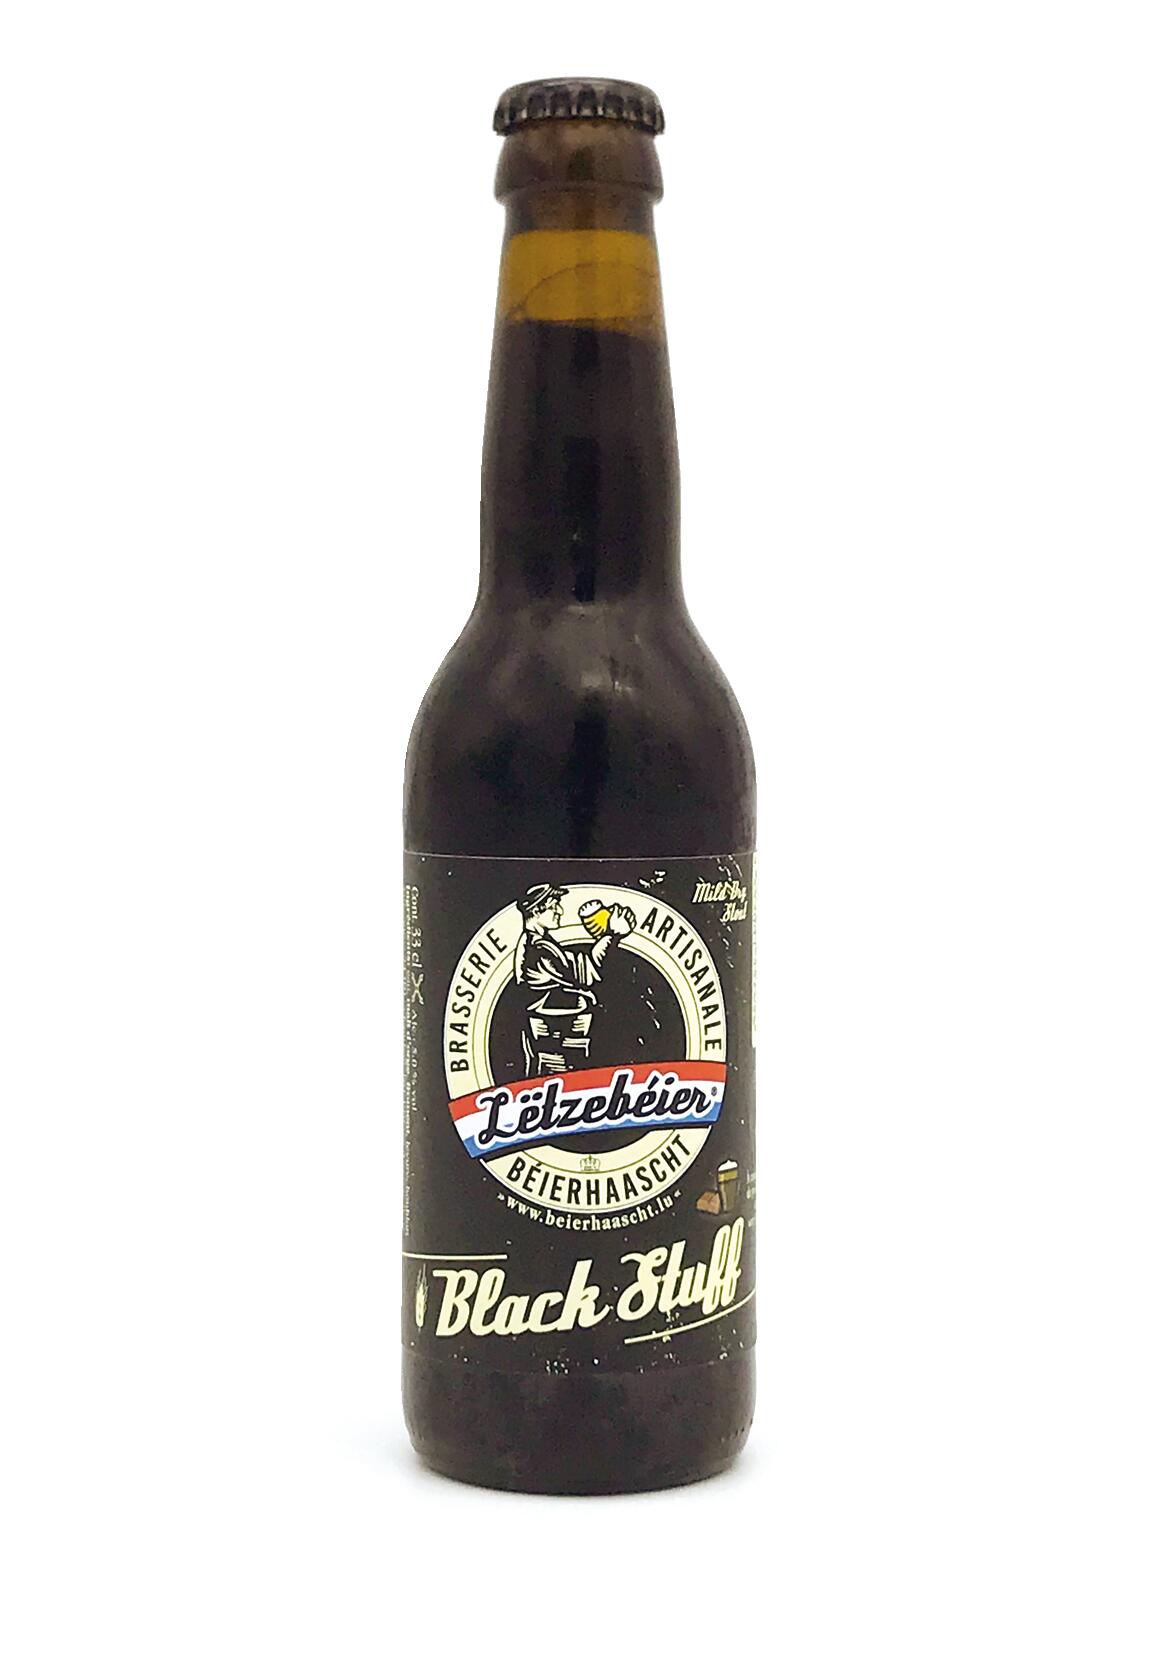 Lëtzebéier Black Stuff, dark beer, Béierhaascht